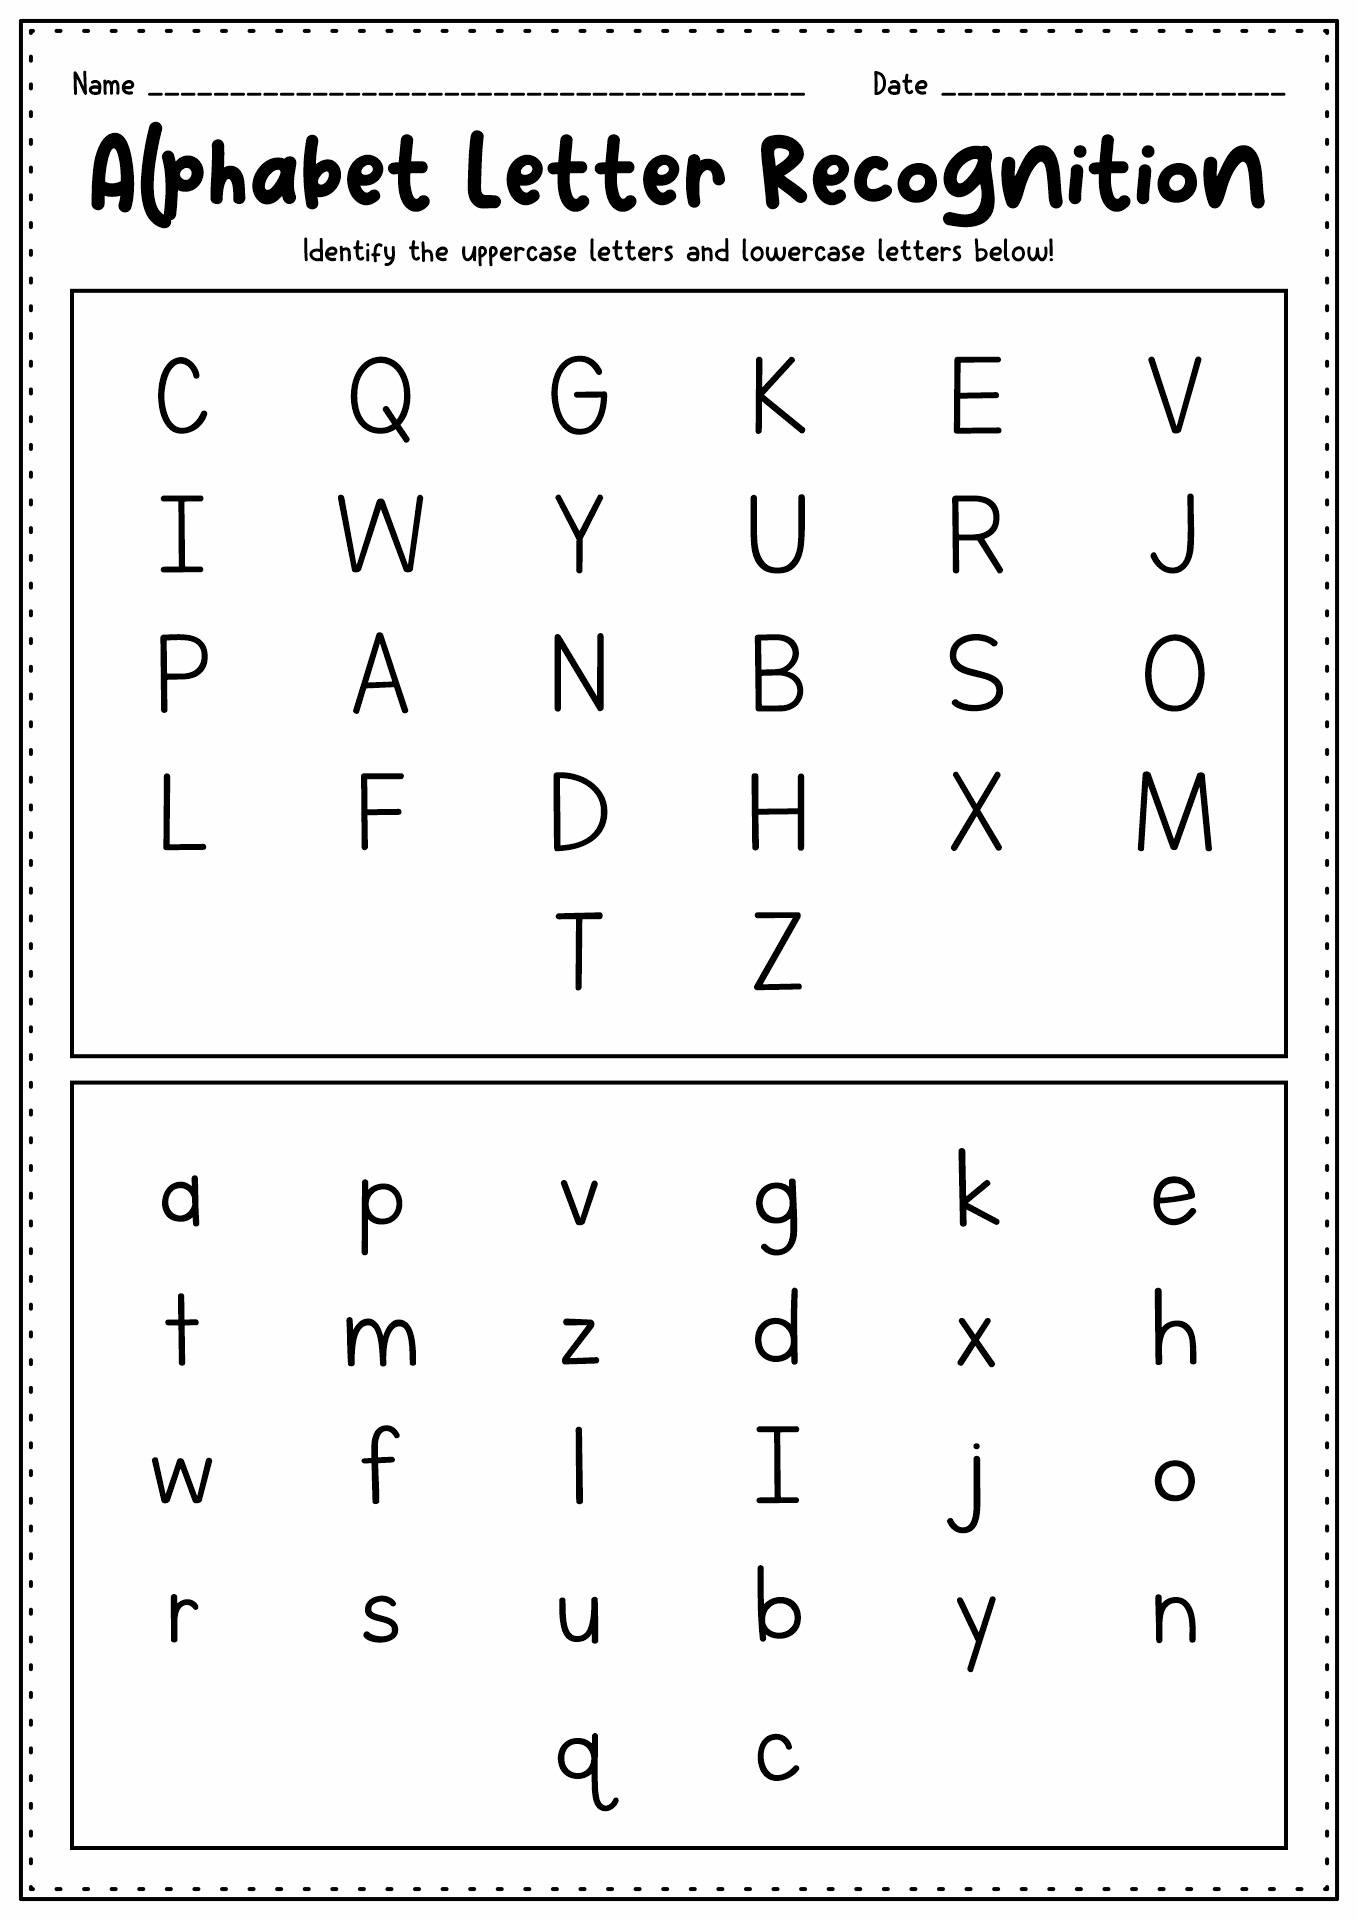 Alphabet Letter Recognition